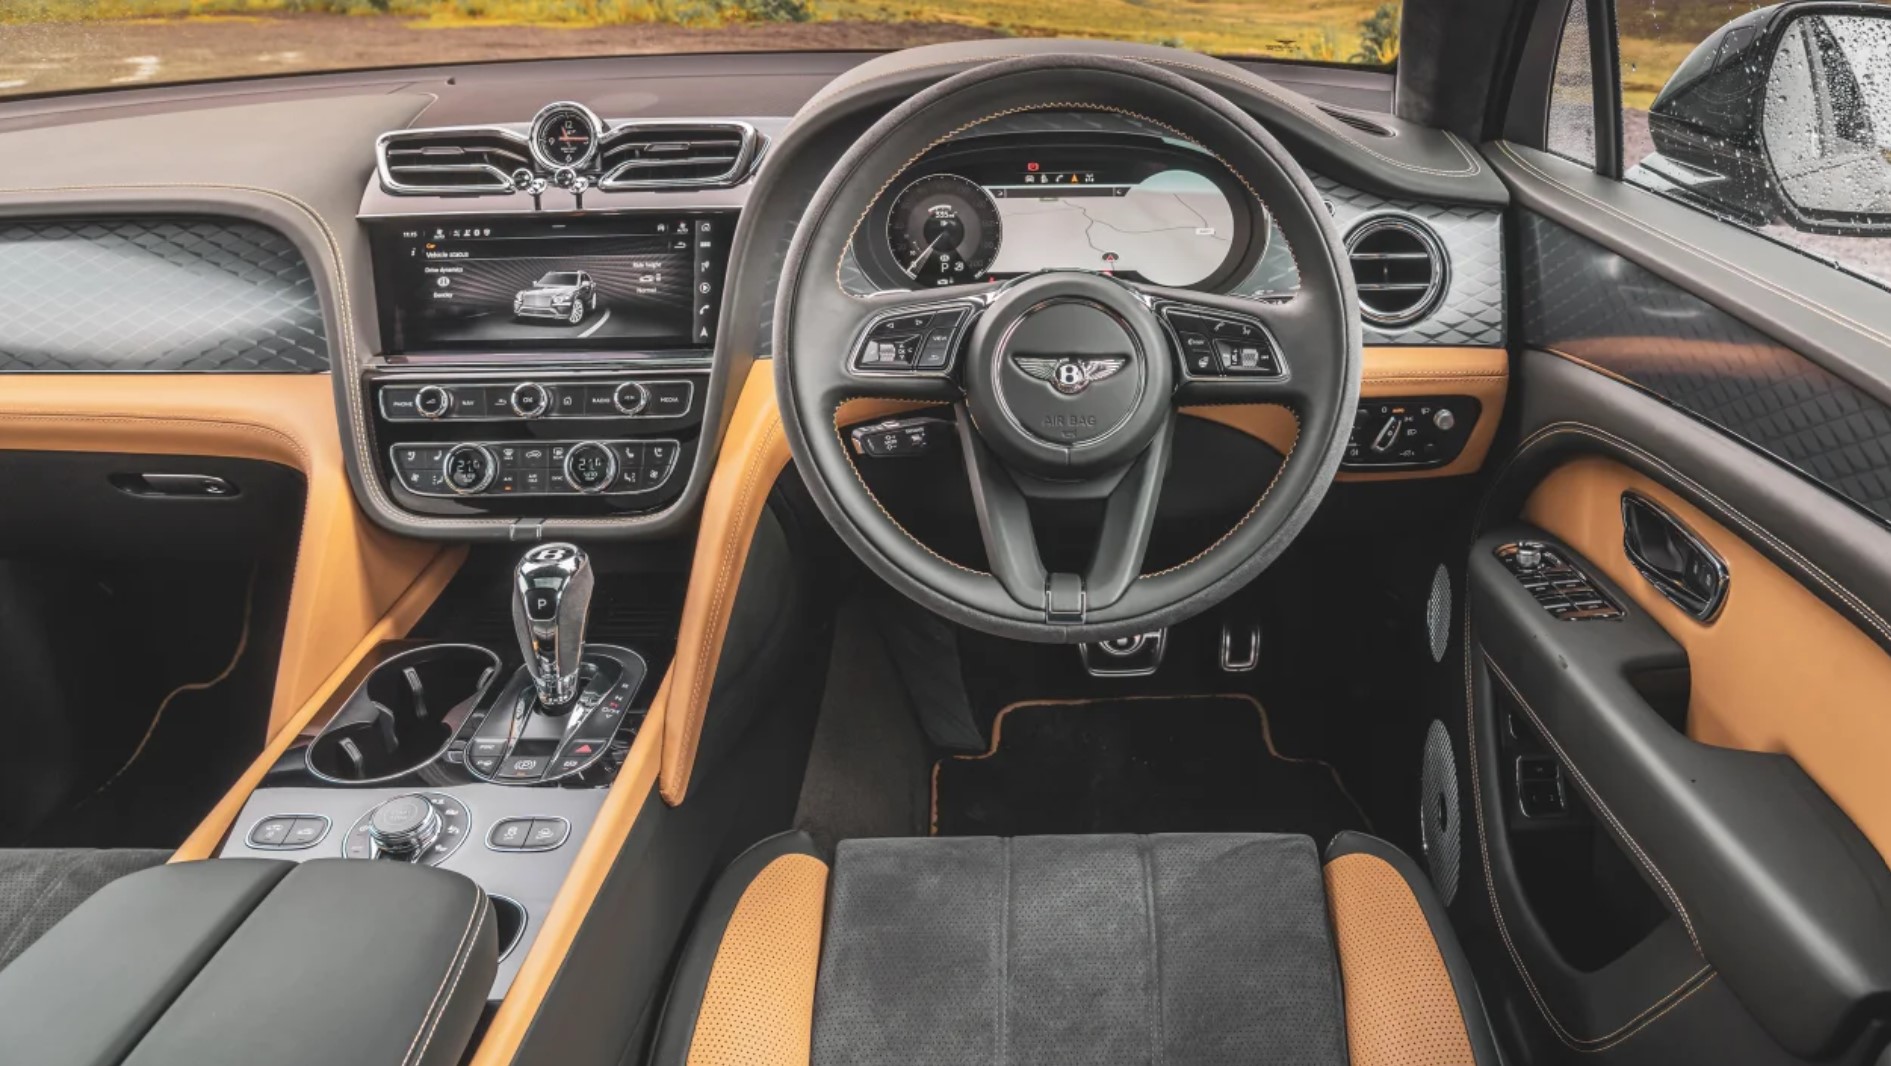 Range Rover Bentley Bentayga comparison 2022 7